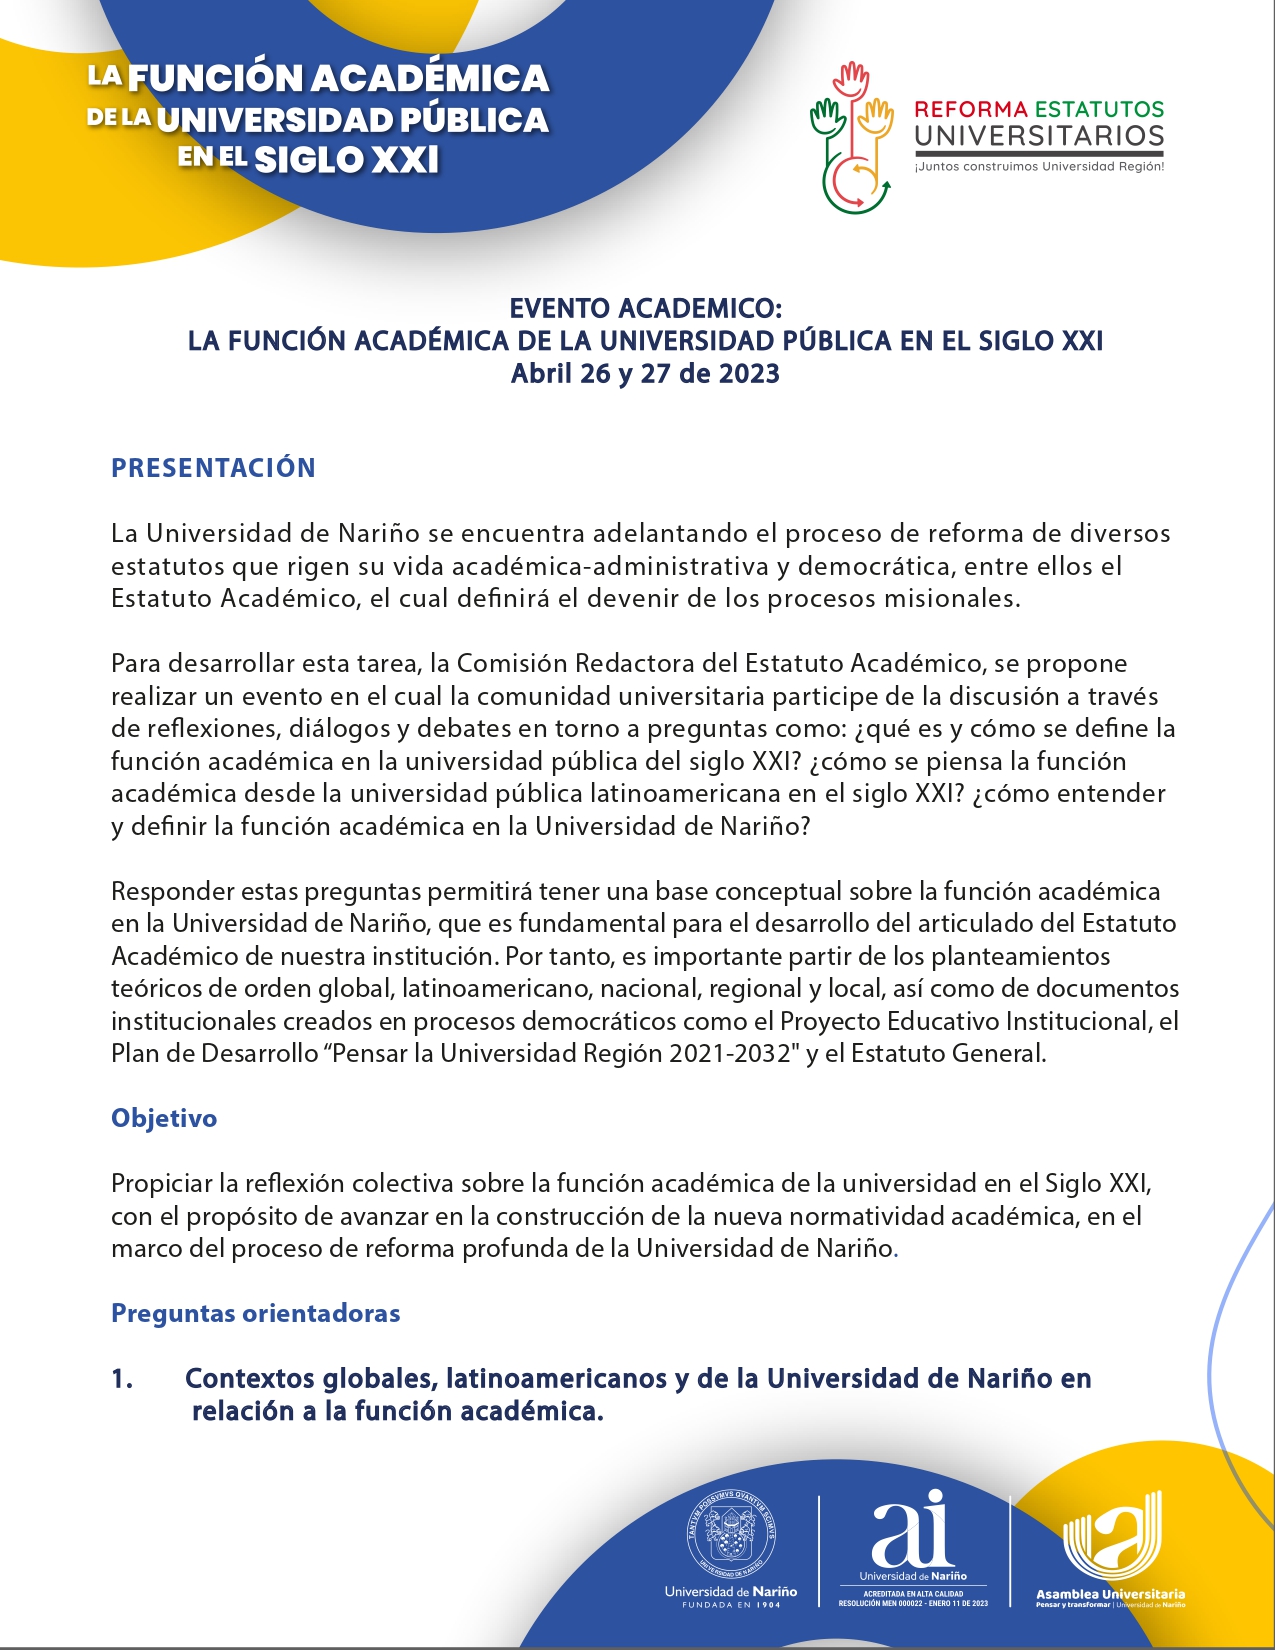 UDENAR-PERIODICO-FunciOn-AcadEmica-Universidad-PUblica-1